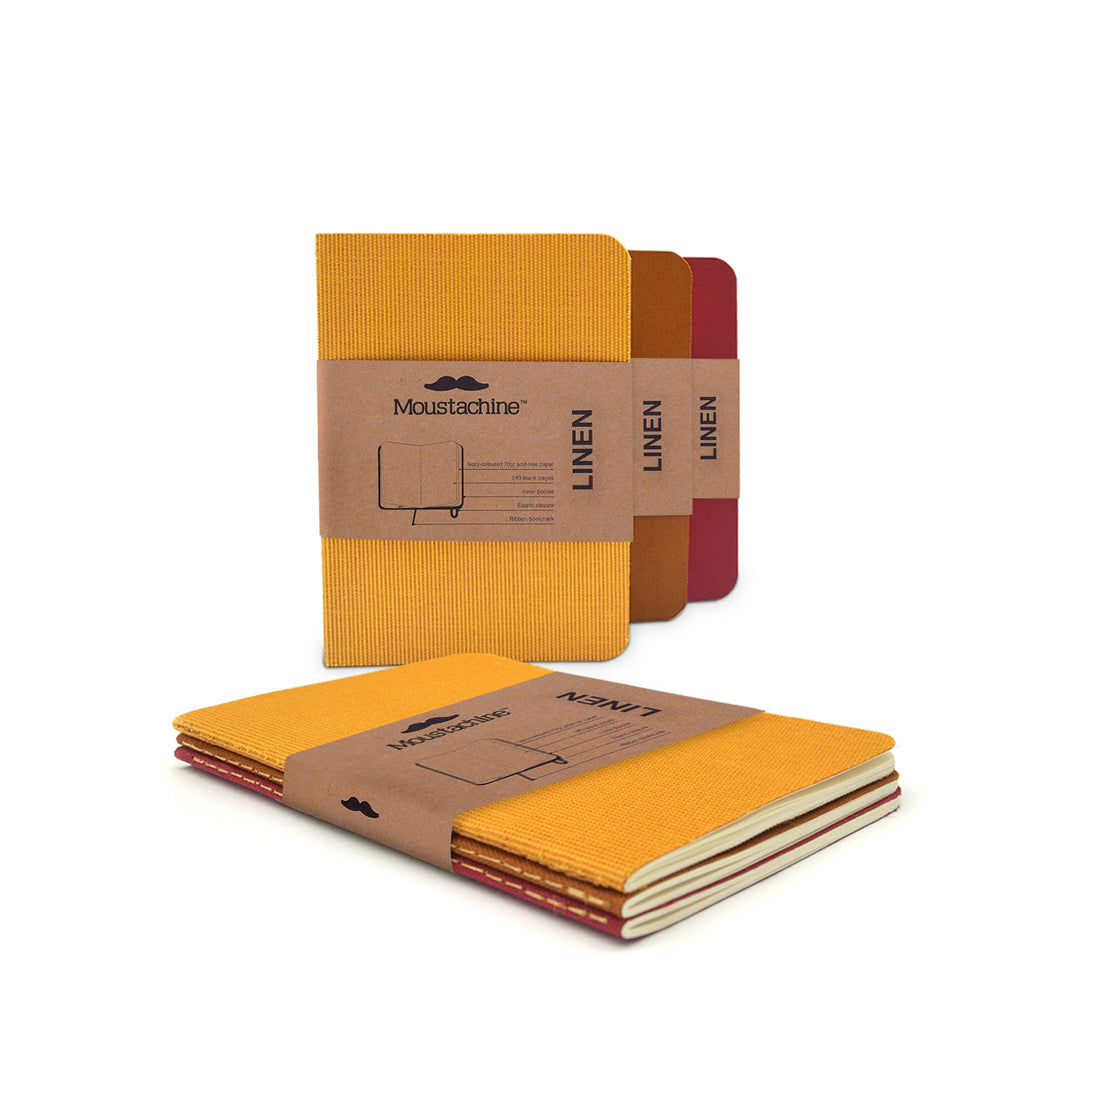 Moustachine Slim Yellows and Reds Passport™